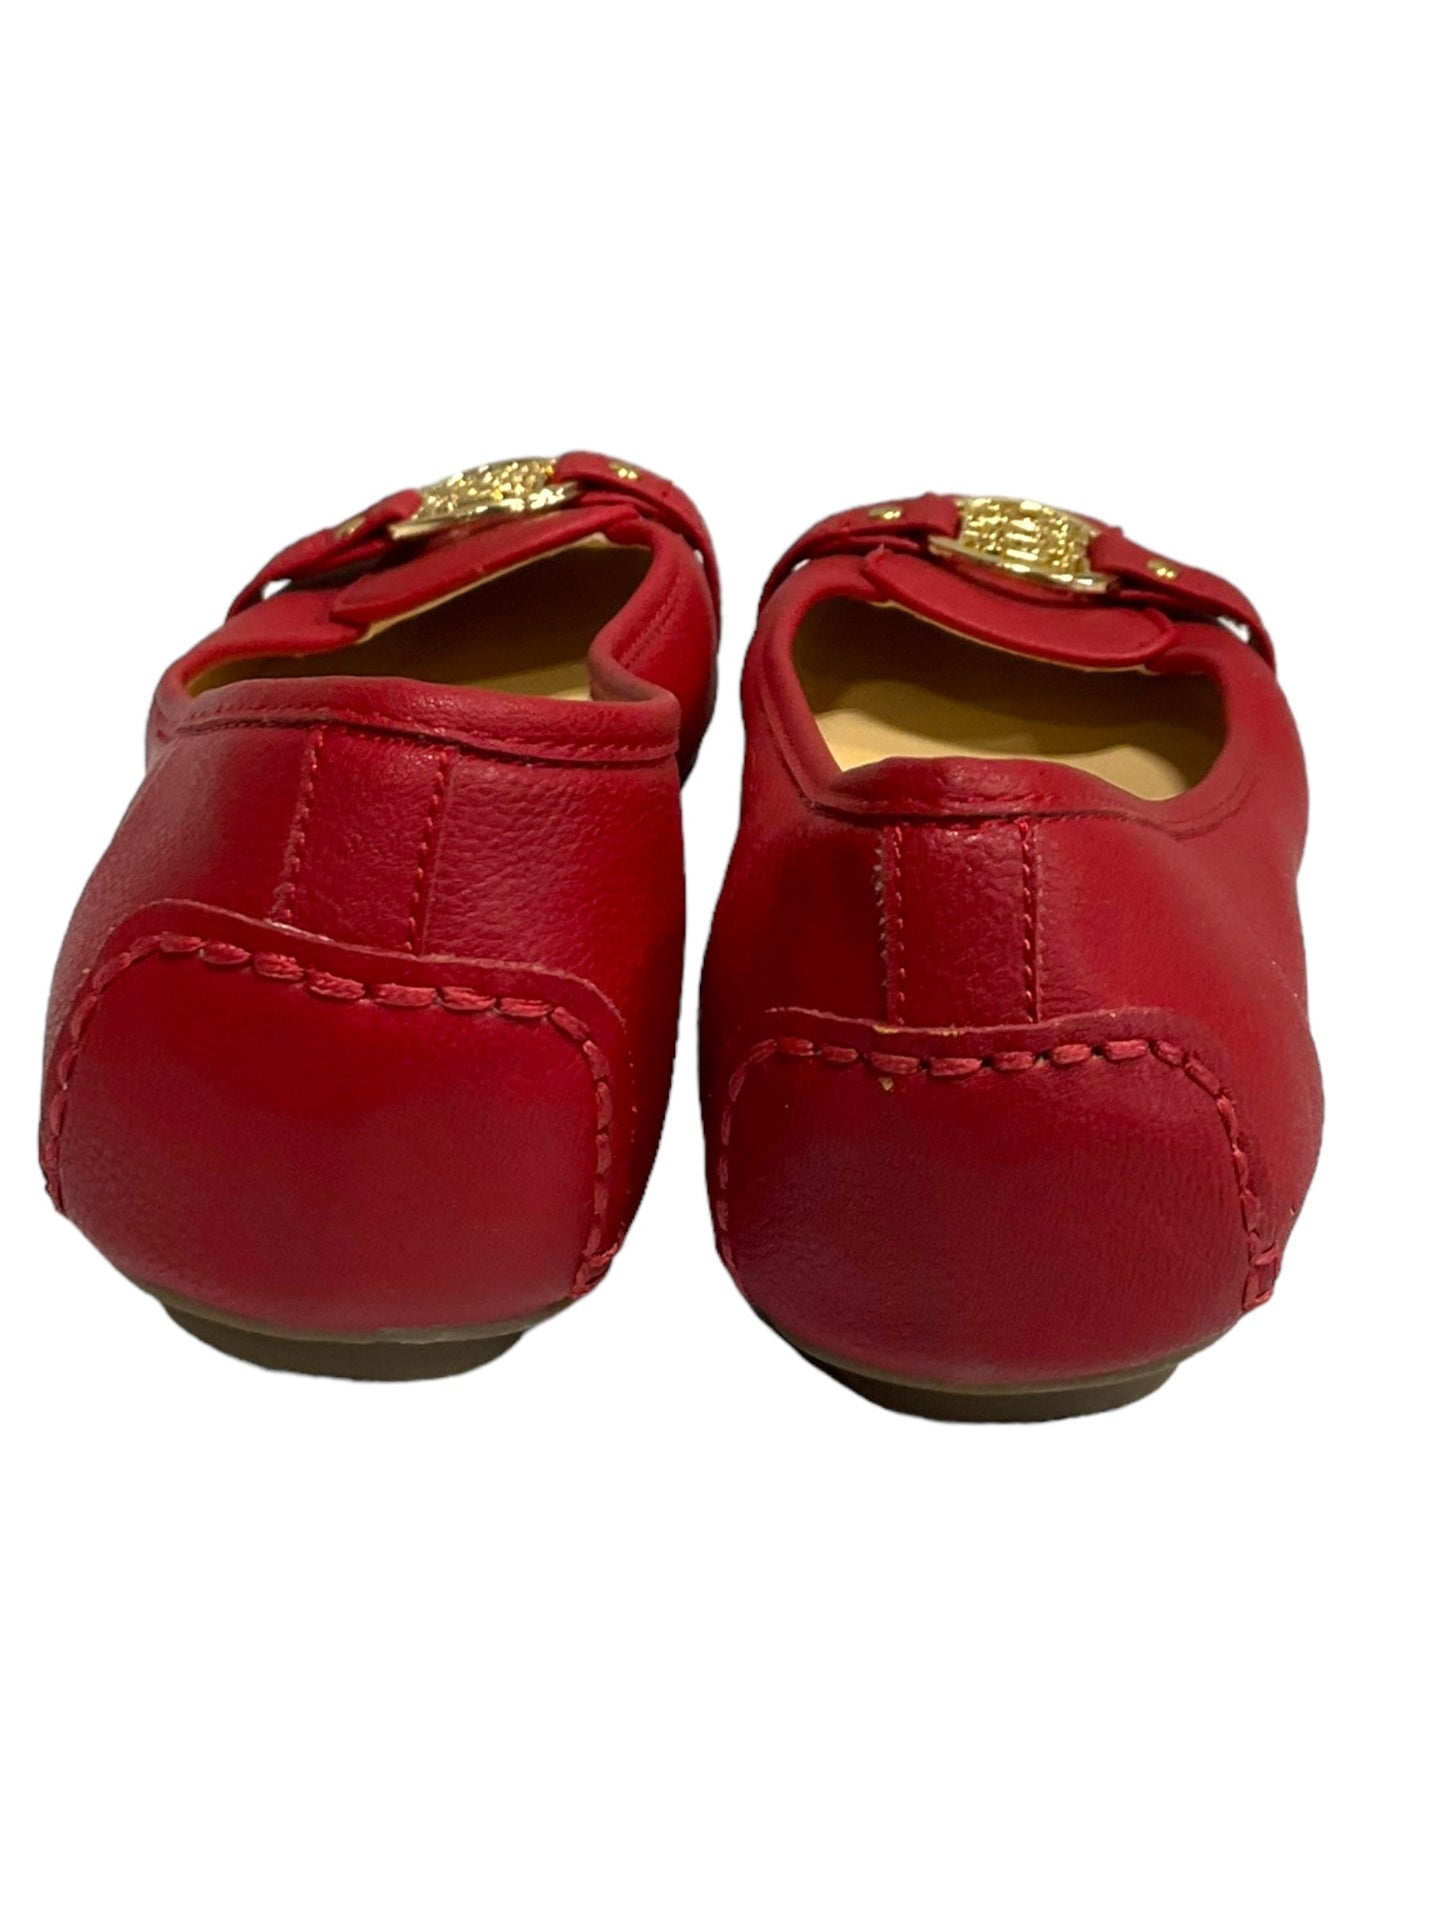 Red Shoes Flats Liz Claiborne, Size 7.5